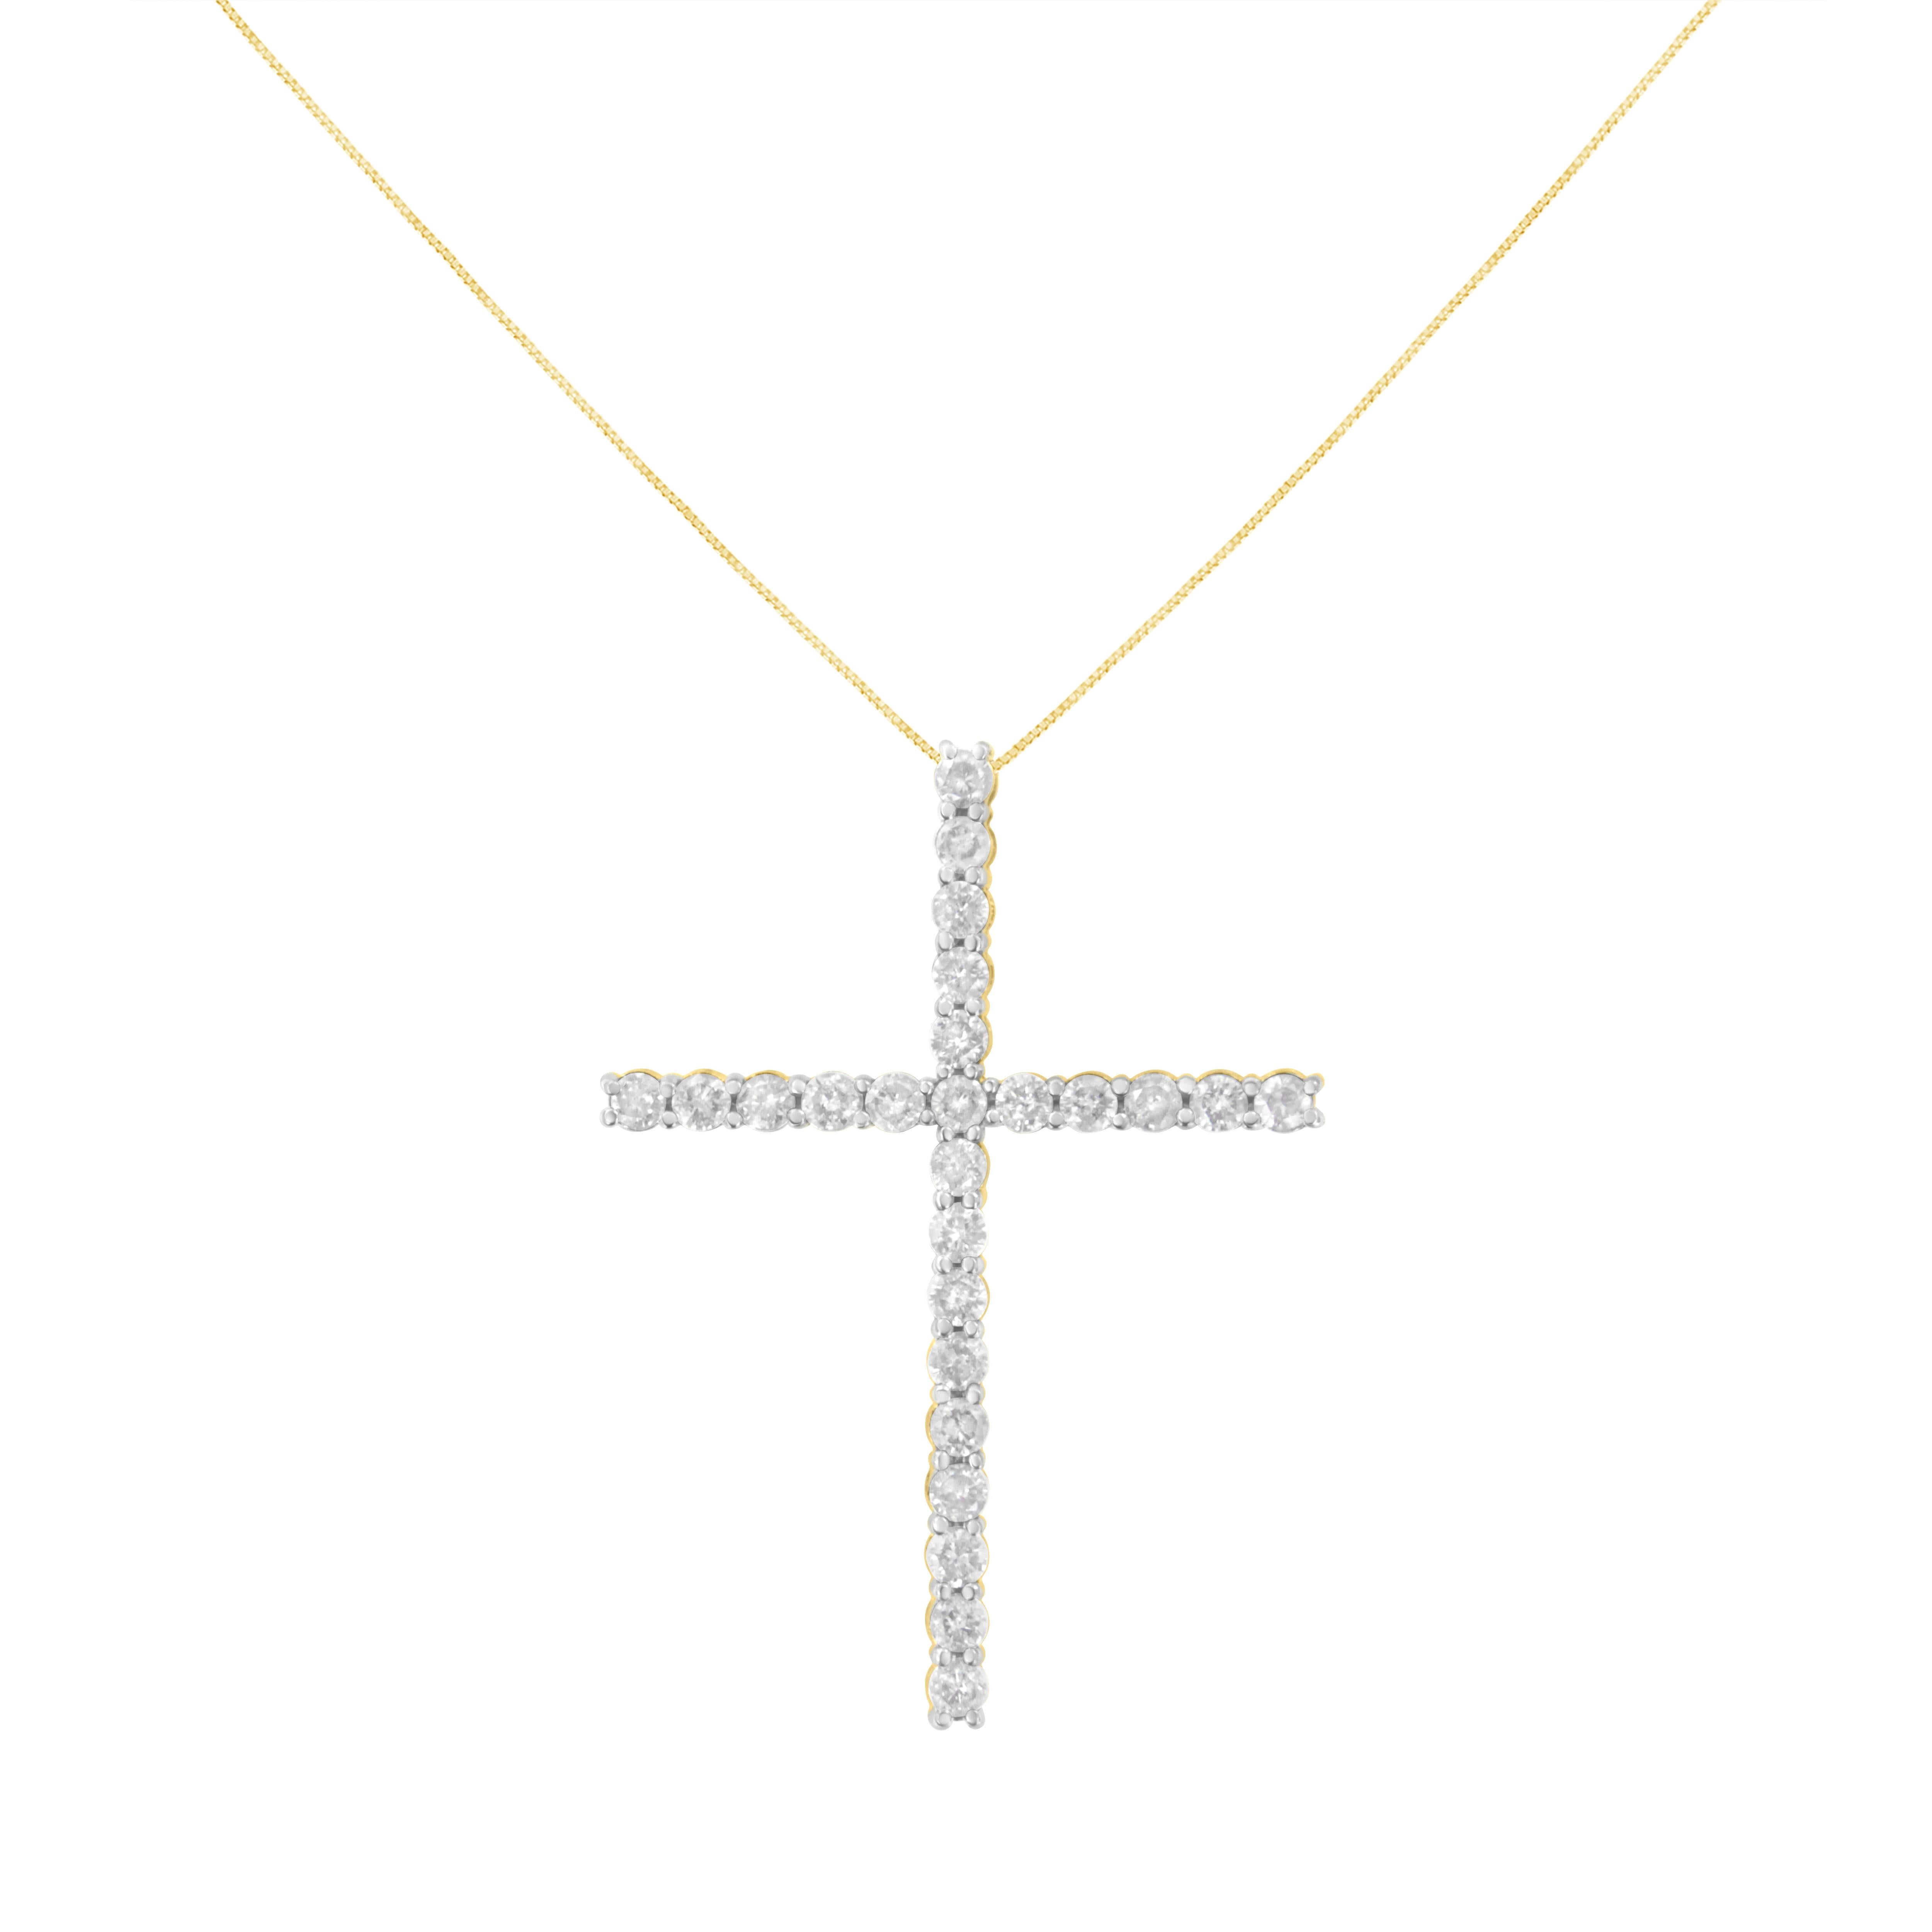 Teilen Sie Ihren Glauben mit dieser atemberaubenden Diamant-Kreuz-Anhänger-Halskette. Diese geschätzte Kreuz-Halskette für sie, verfügt über 25 natürliche, runde Diamanten in 2 Micron 10k Gelbgold plattiert Sterling Silber. Der Anhänger hängt an